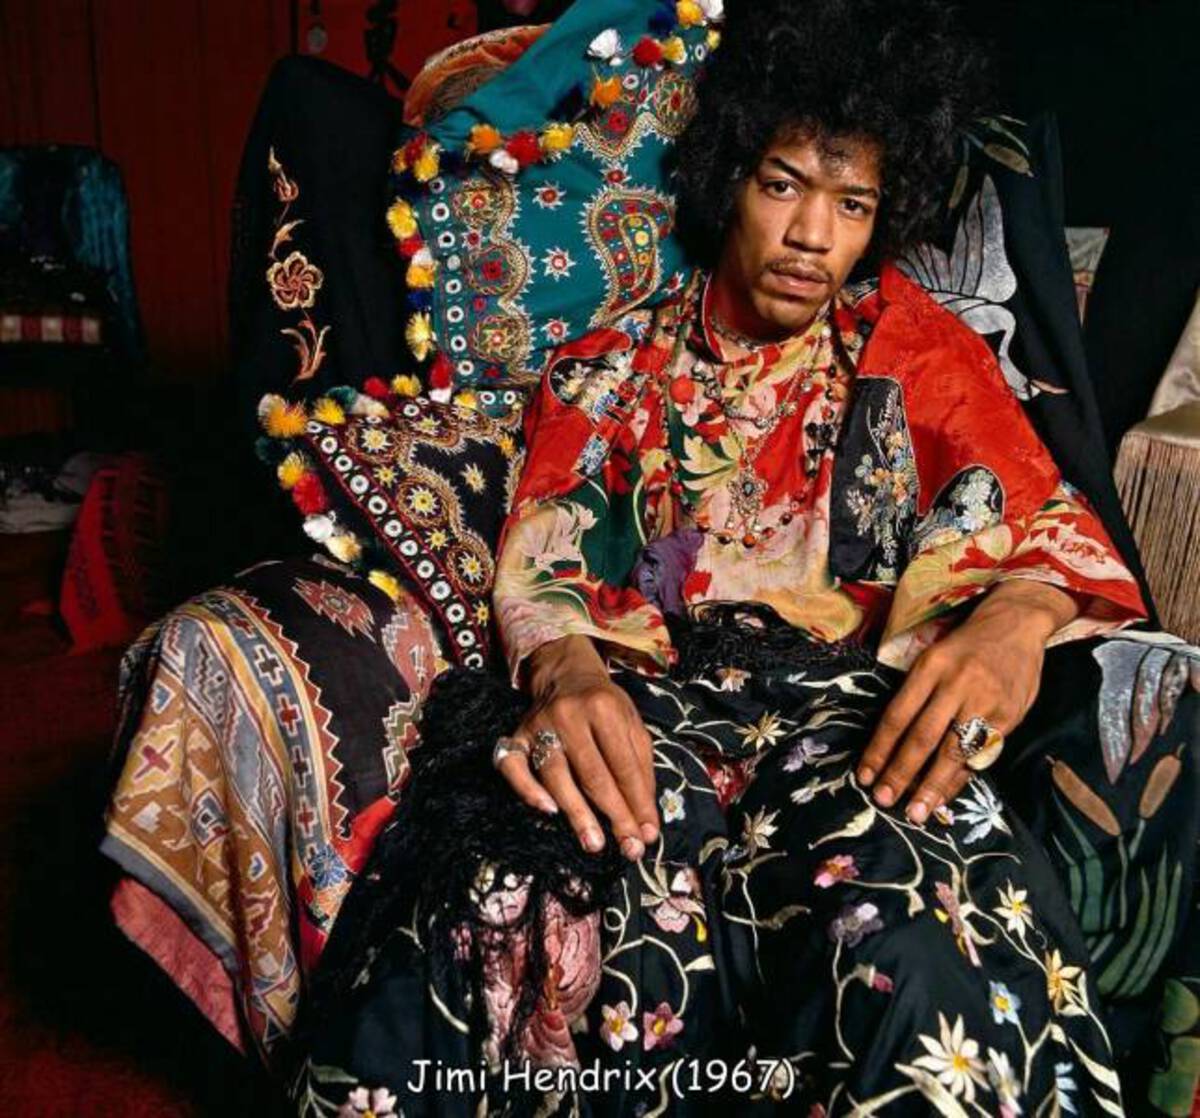 terence donovan jimi hendrix - All 0000000000 00 3.0.0.0 100 Jimi Hendrix 1967